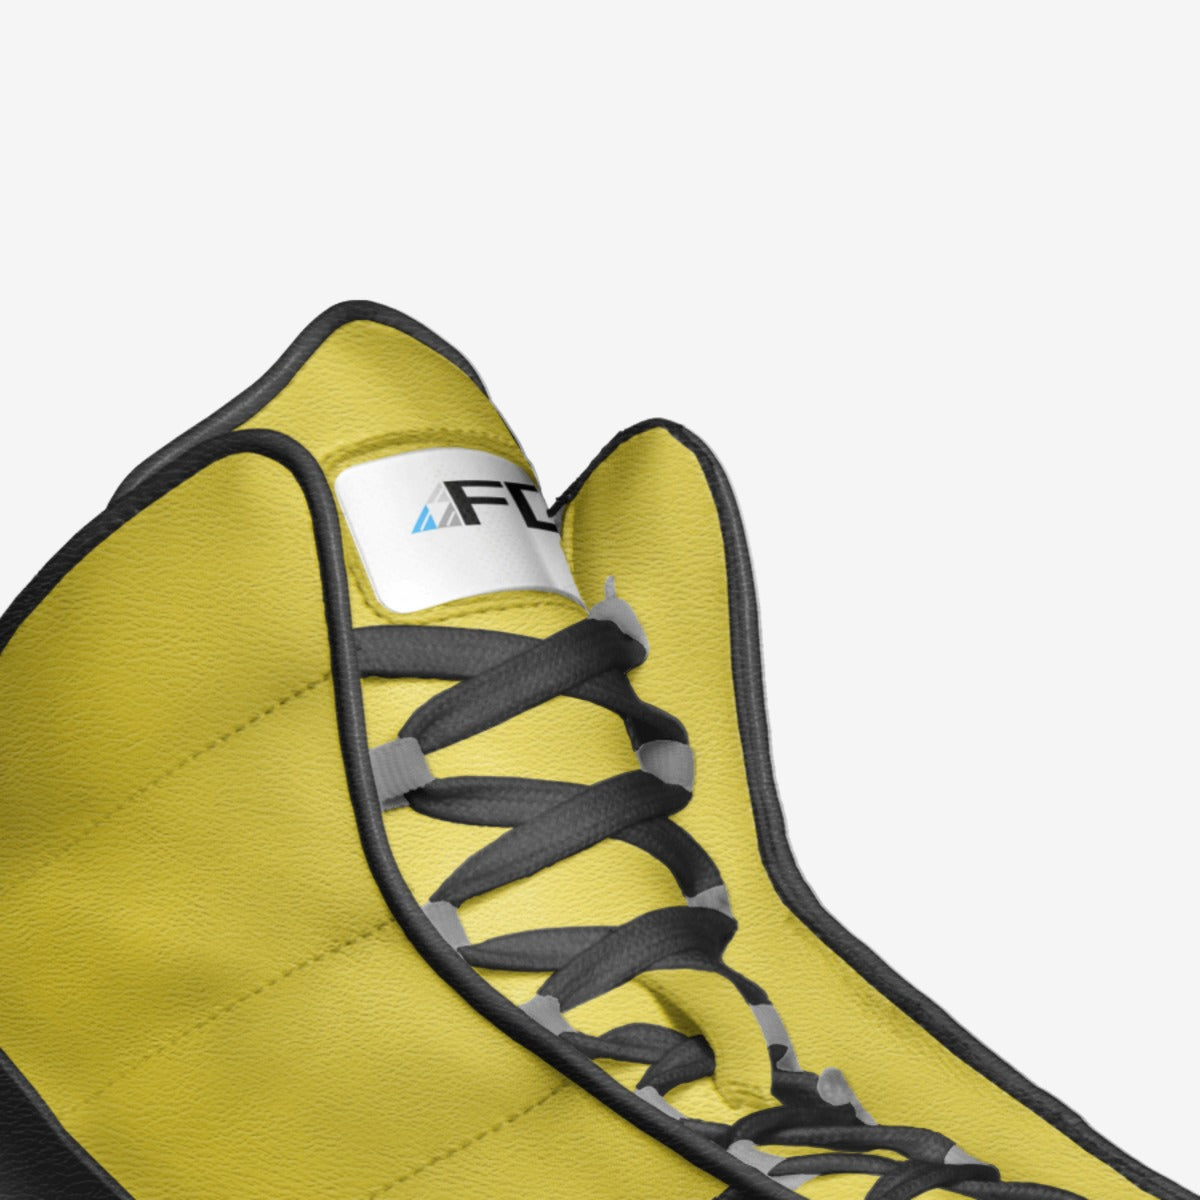 Forever Drift Prime 1 Mark 1 Shoes - Nitro Yellow - Unisex